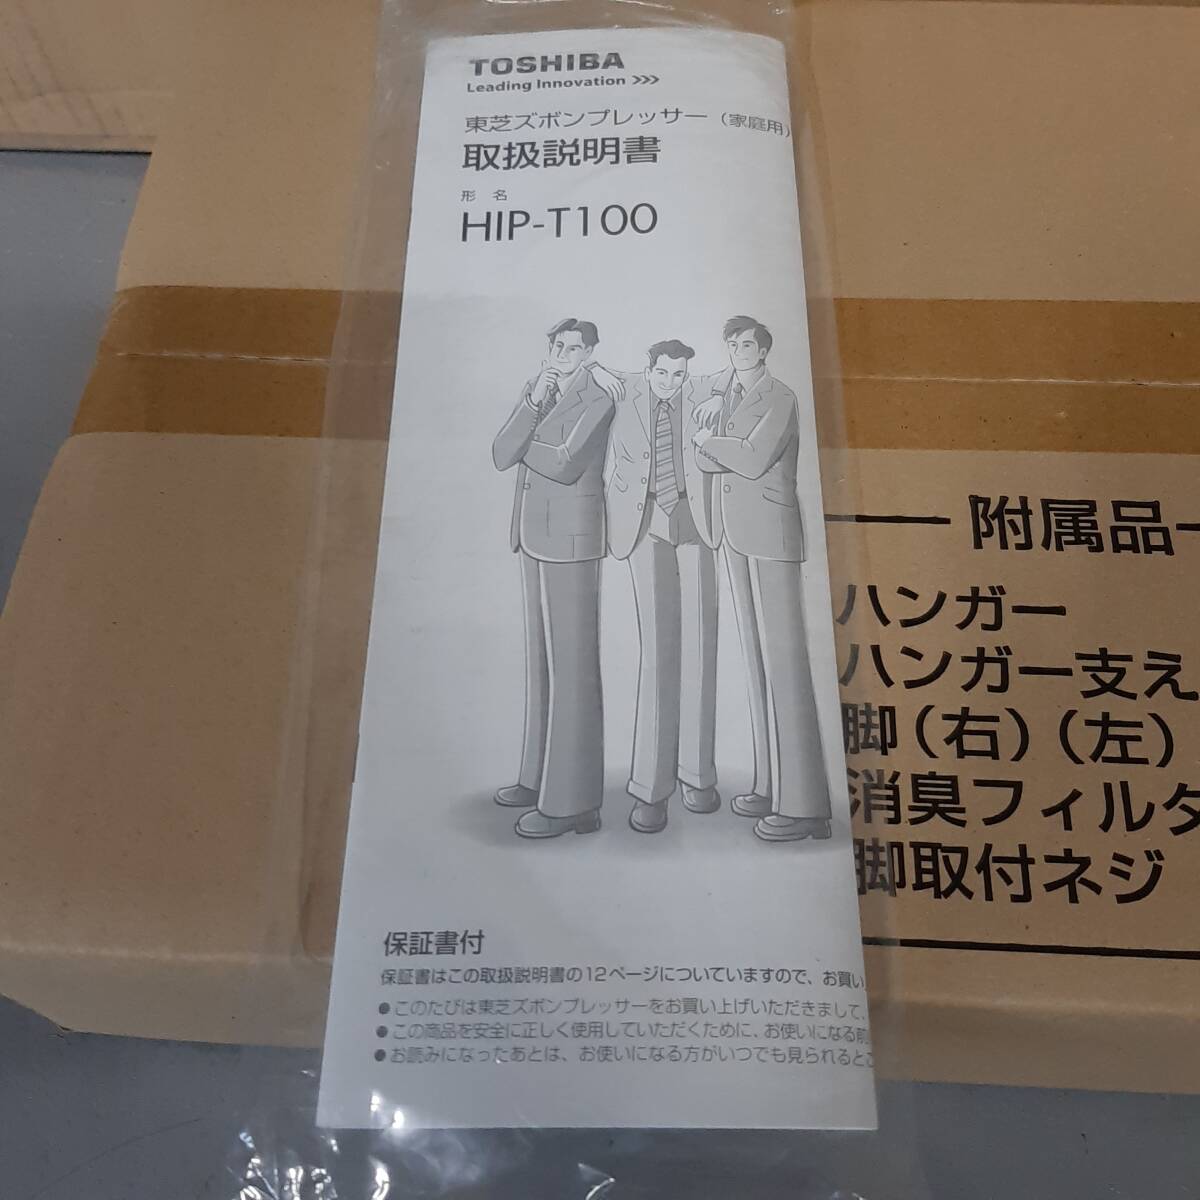 【 неиспользуемый 】TOSHIBA HIP-T100  высота   модель   ... ...  Toshiba   домашнее использование   бытовые электротовары   новый товар   открыт    долго хранившийся товар  180 размер    комплектующие  не вскрытый 